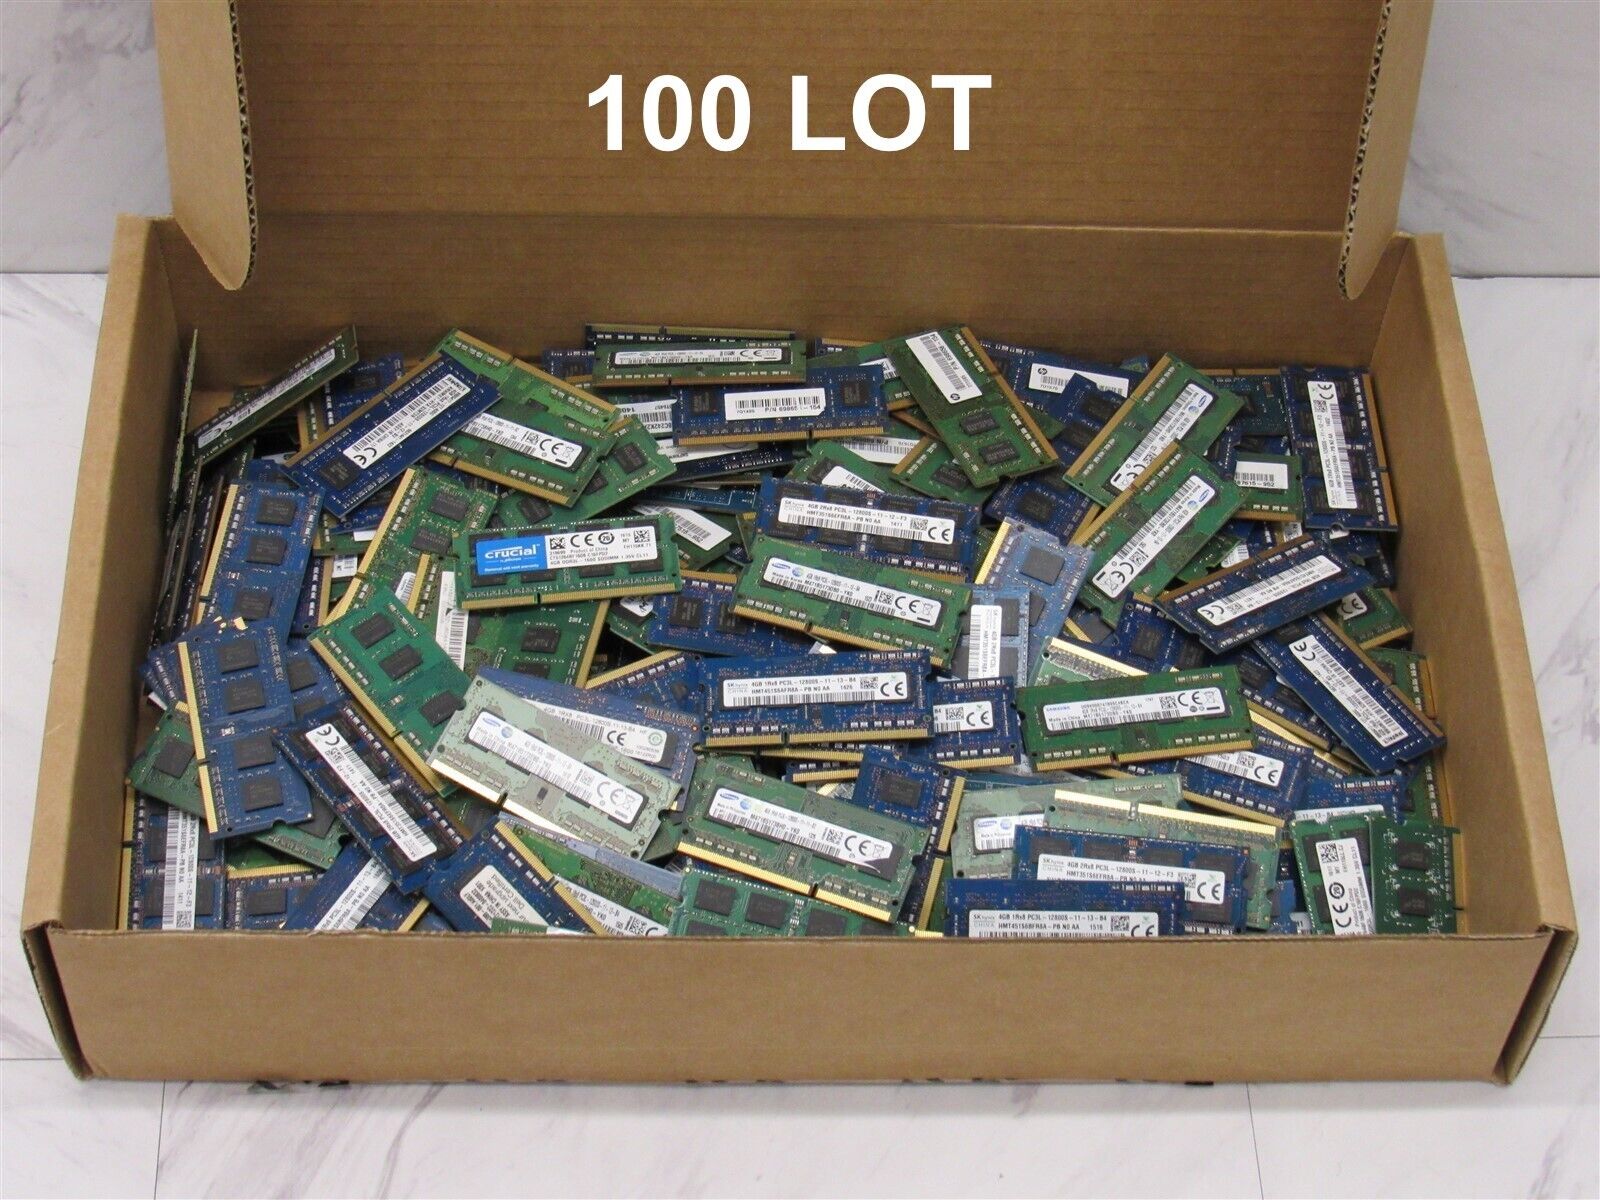 100 LOT - 4GB PC3L-12800S DDR3 1600MHz SODIMM Memory Laptop RAM - Major Brands